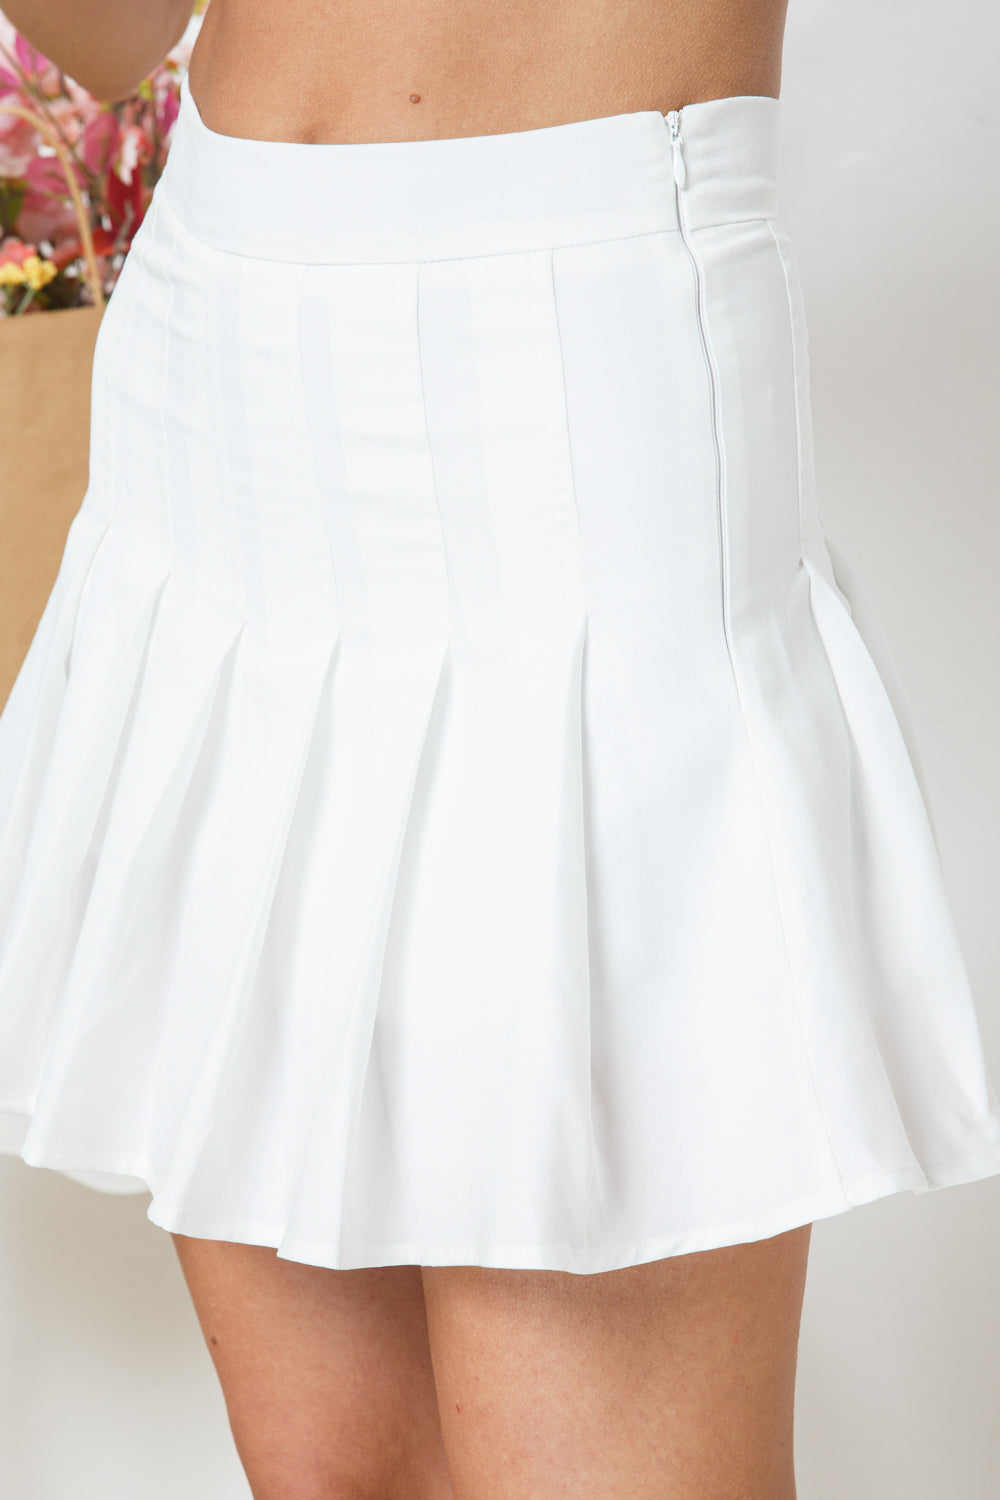 The Perfect Match Tennis Skirt